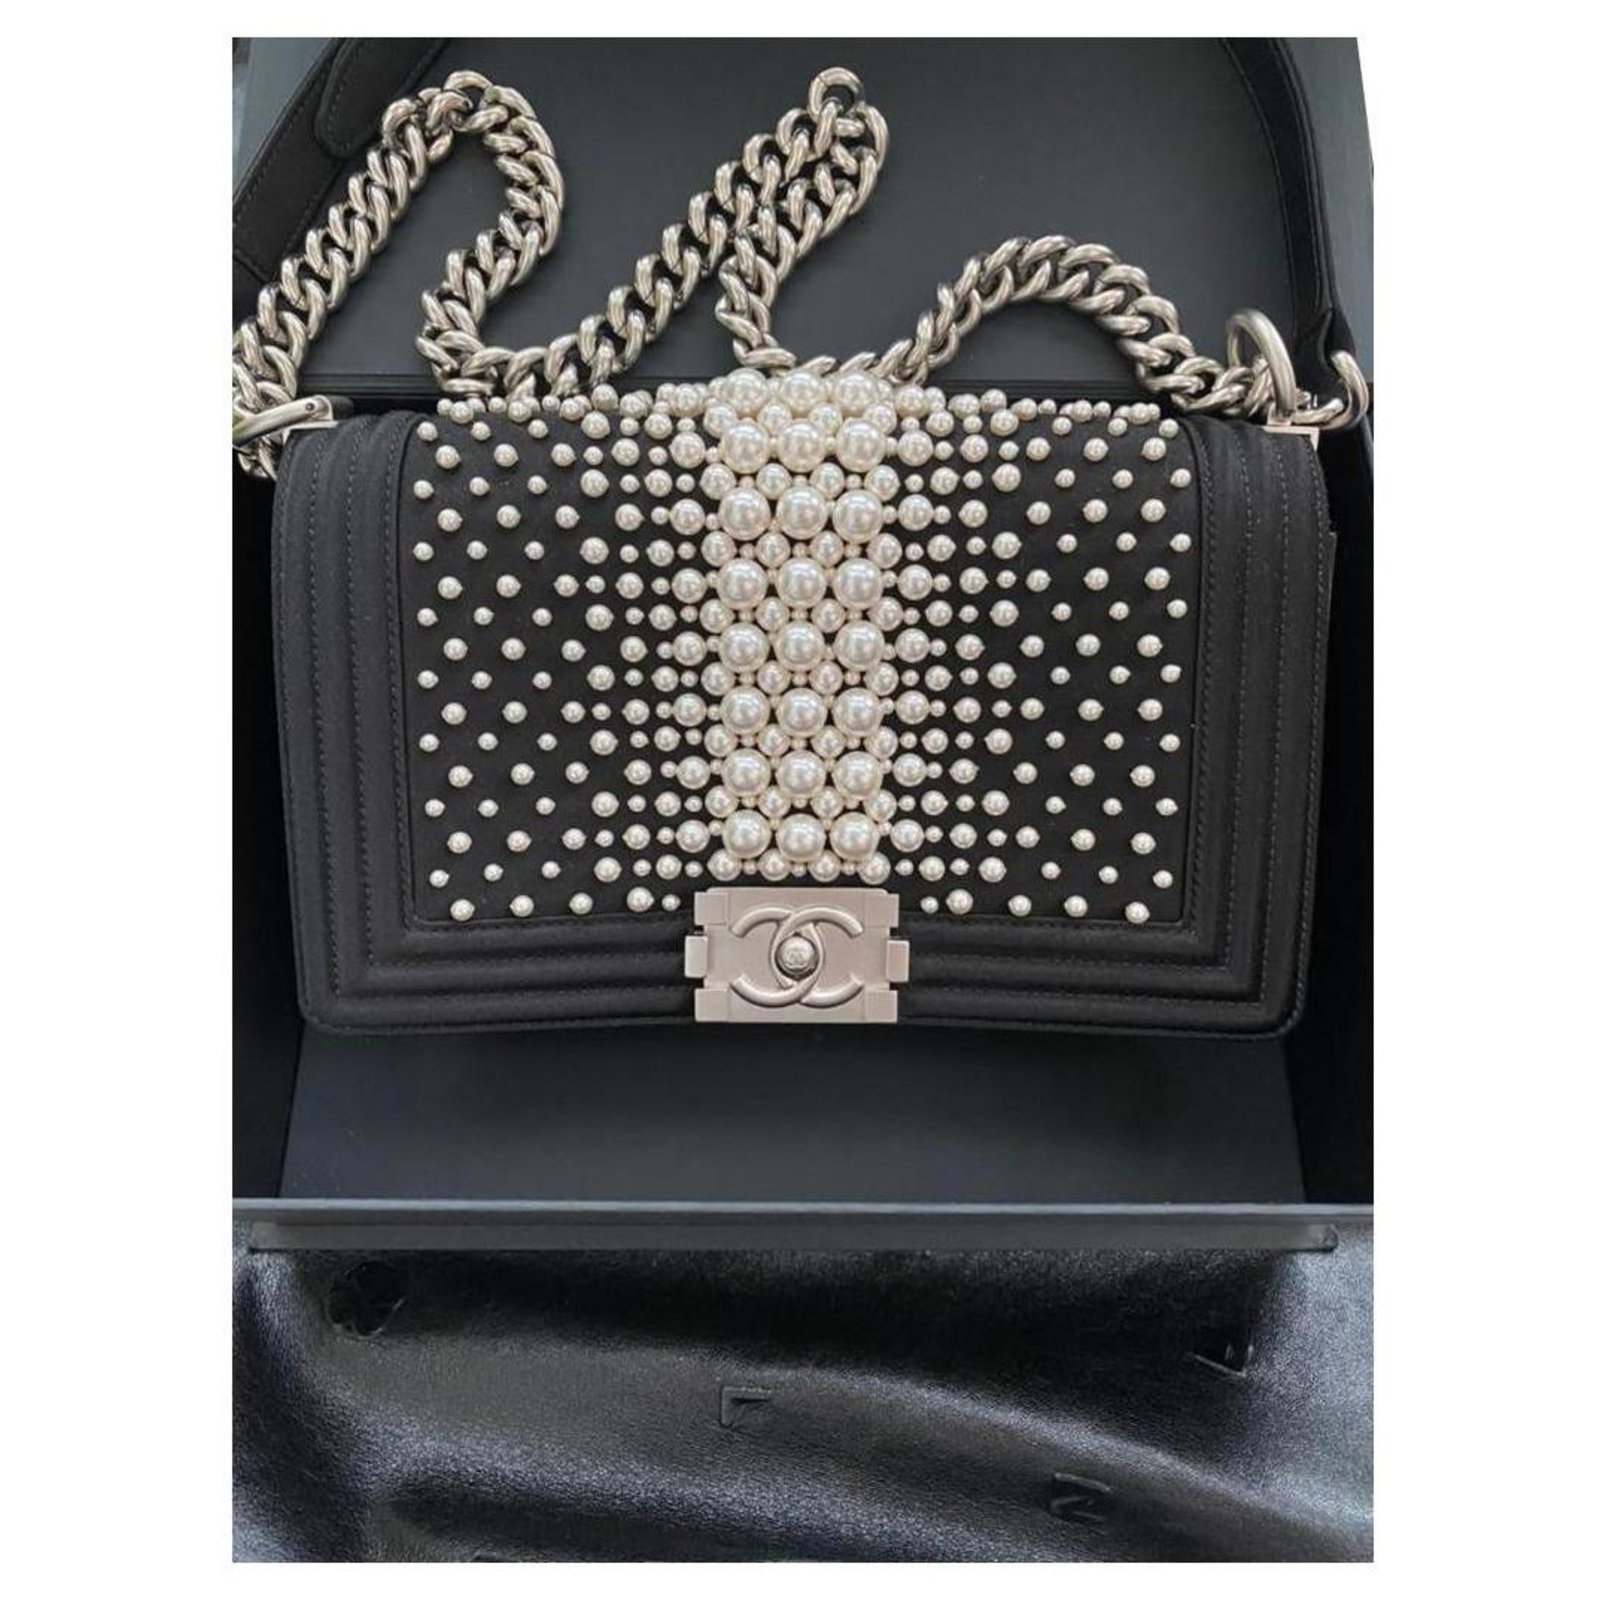 Chanel Medium Boy Bag with Pearls - Limited Edition Black Satin ref ...